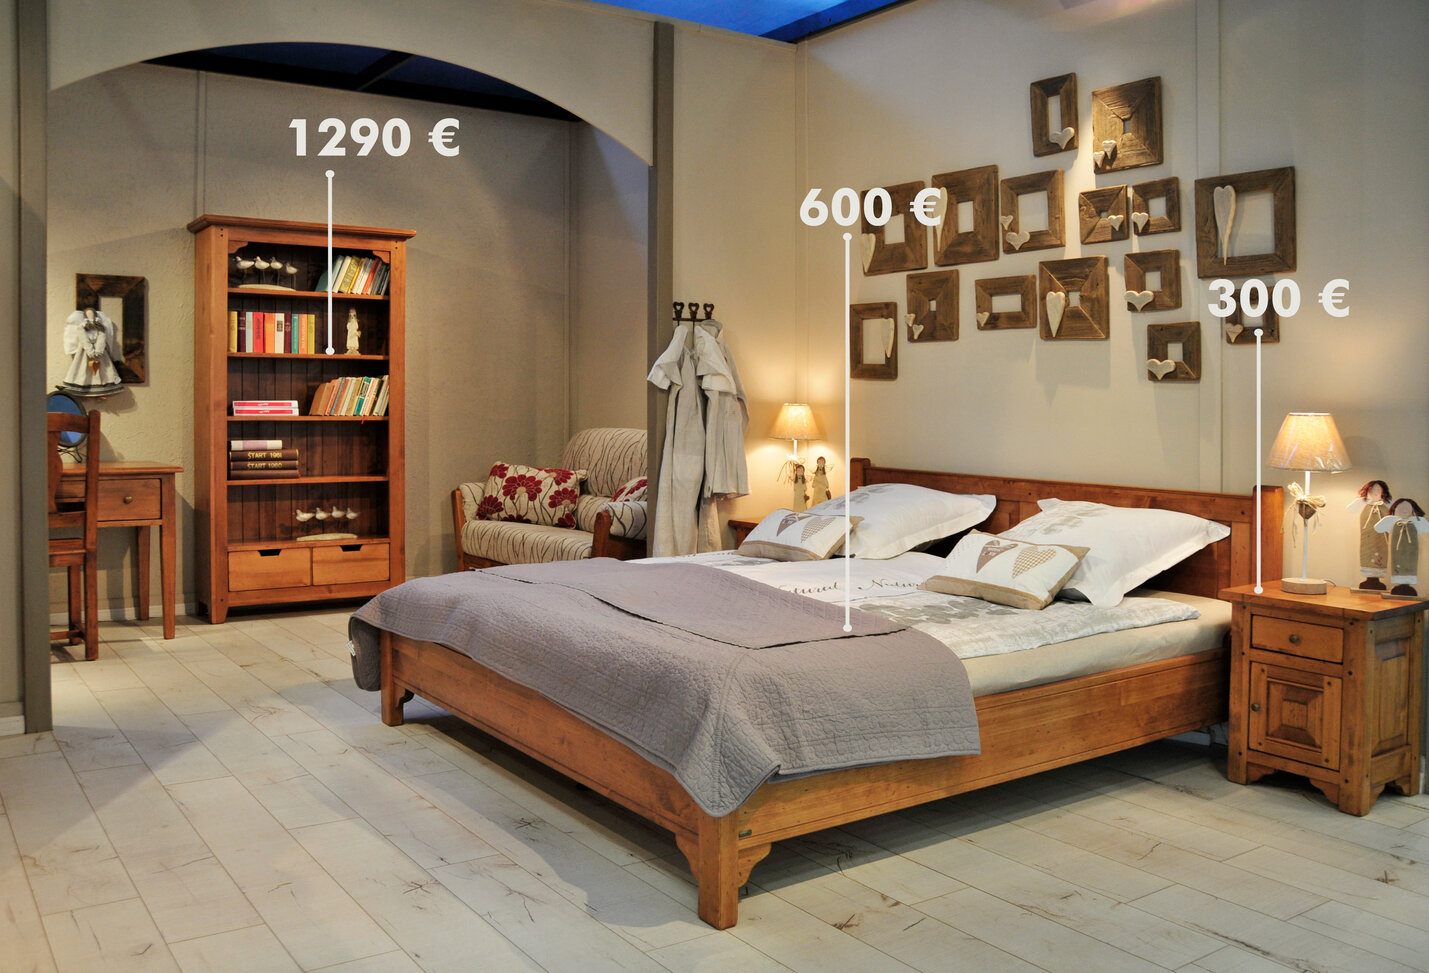 Spálňa v rustikálnom štýle s masívnou, drevenou komodou, nočnám stolíkom a manželskou posteľou, doplnenou o obliečky neutrálnej farby